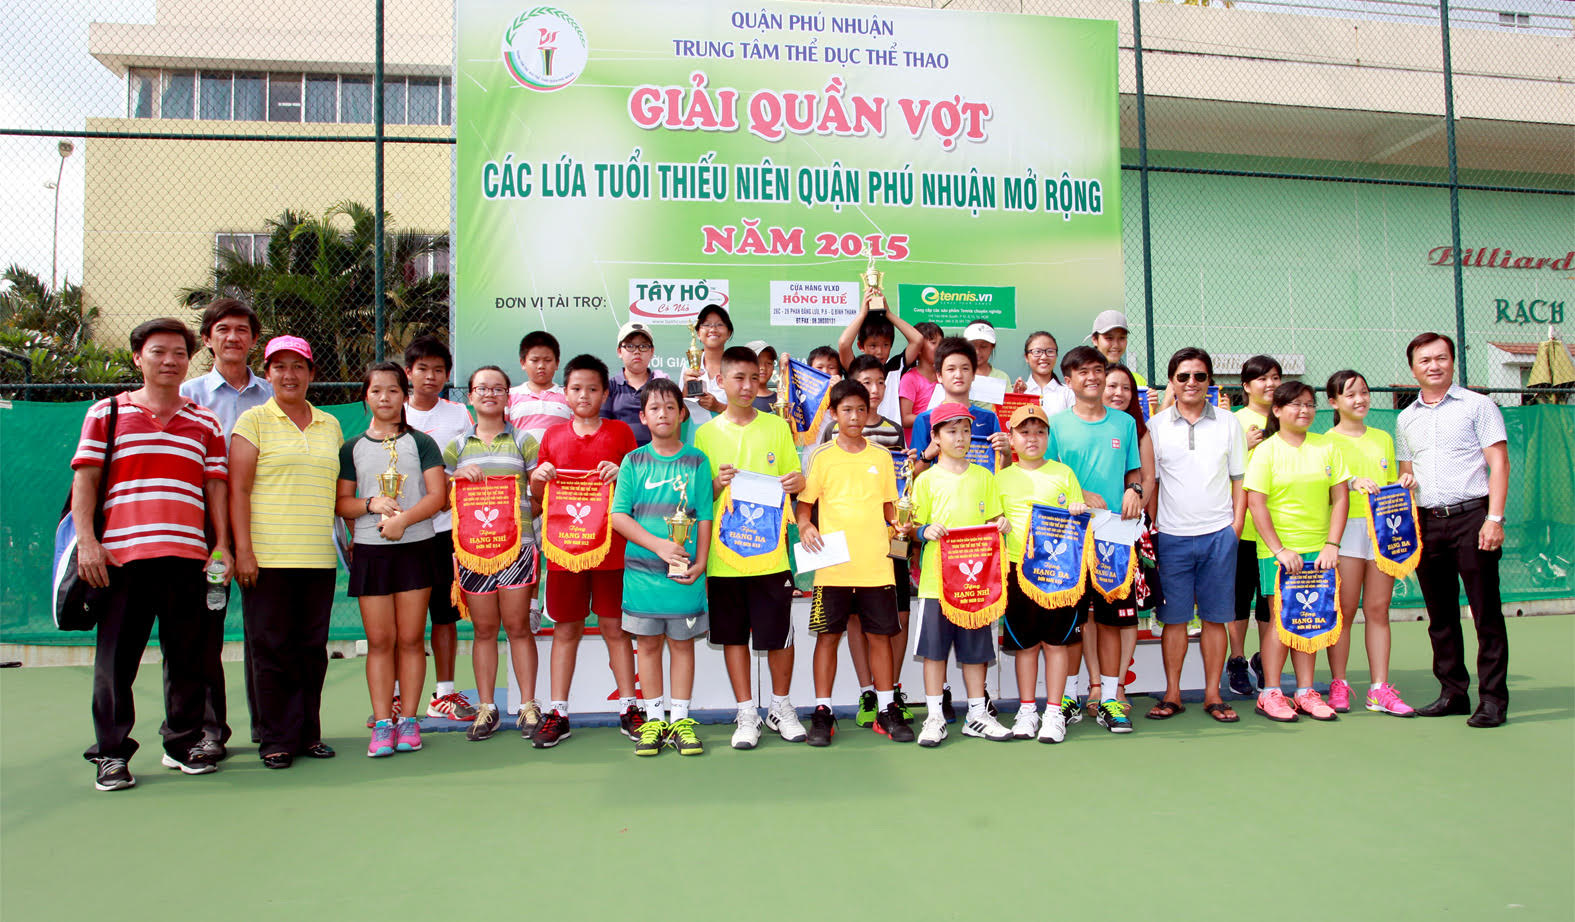 Giải quần vợt Thanh thiếu niên quận Phú Nhuận mở rộng năm 2015